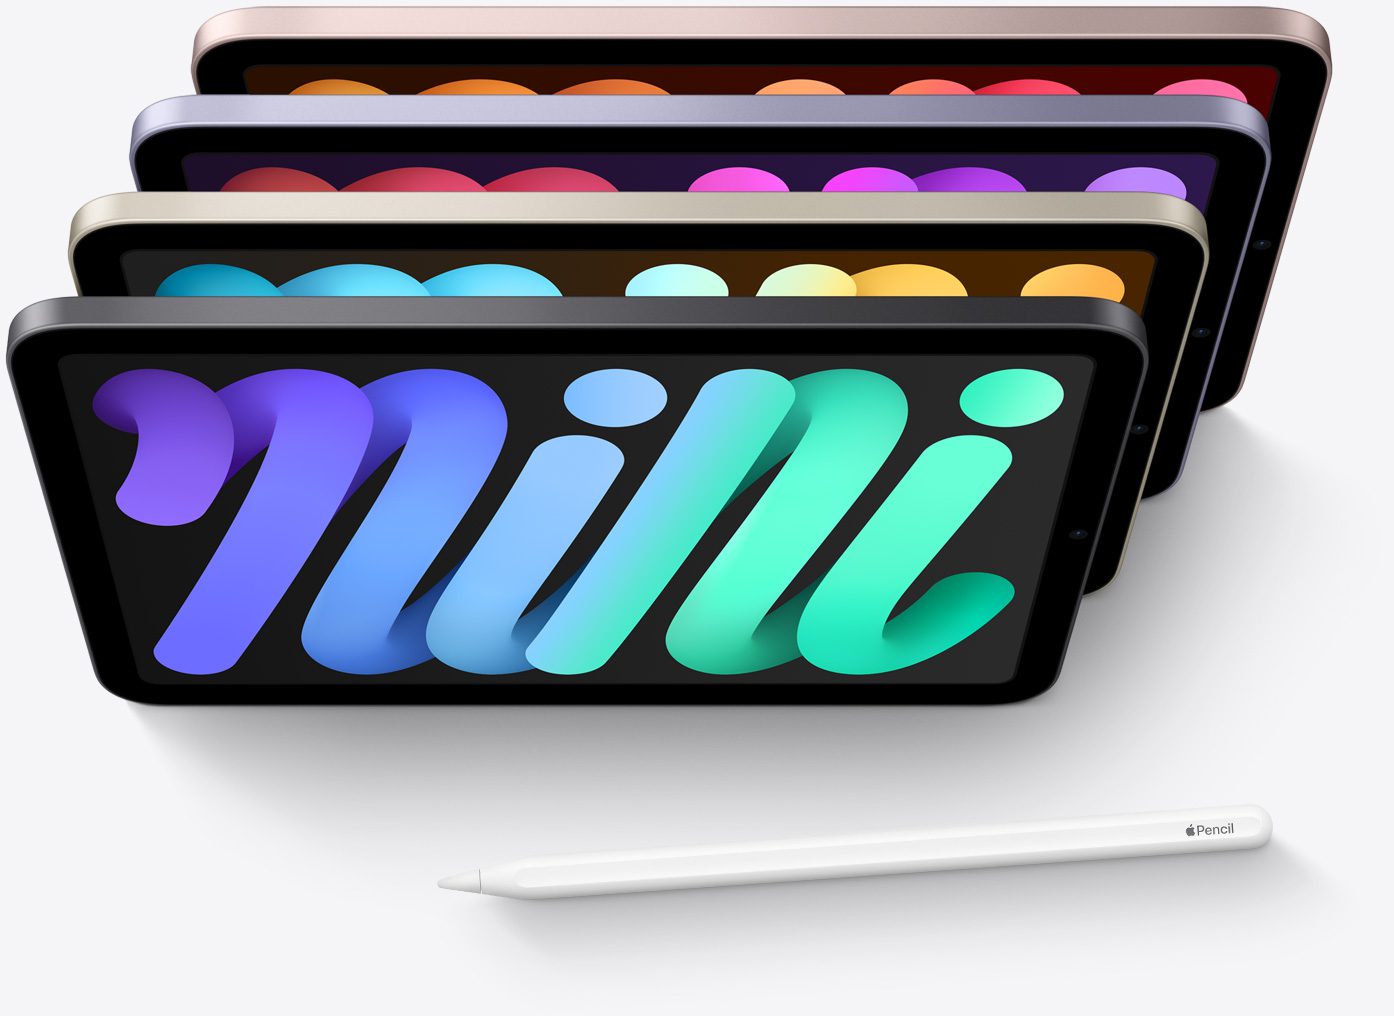 El iPad mini ahora viene en cuatro increíbles colores. Gris espacial. Rosa. Morado. Blanco estelar.